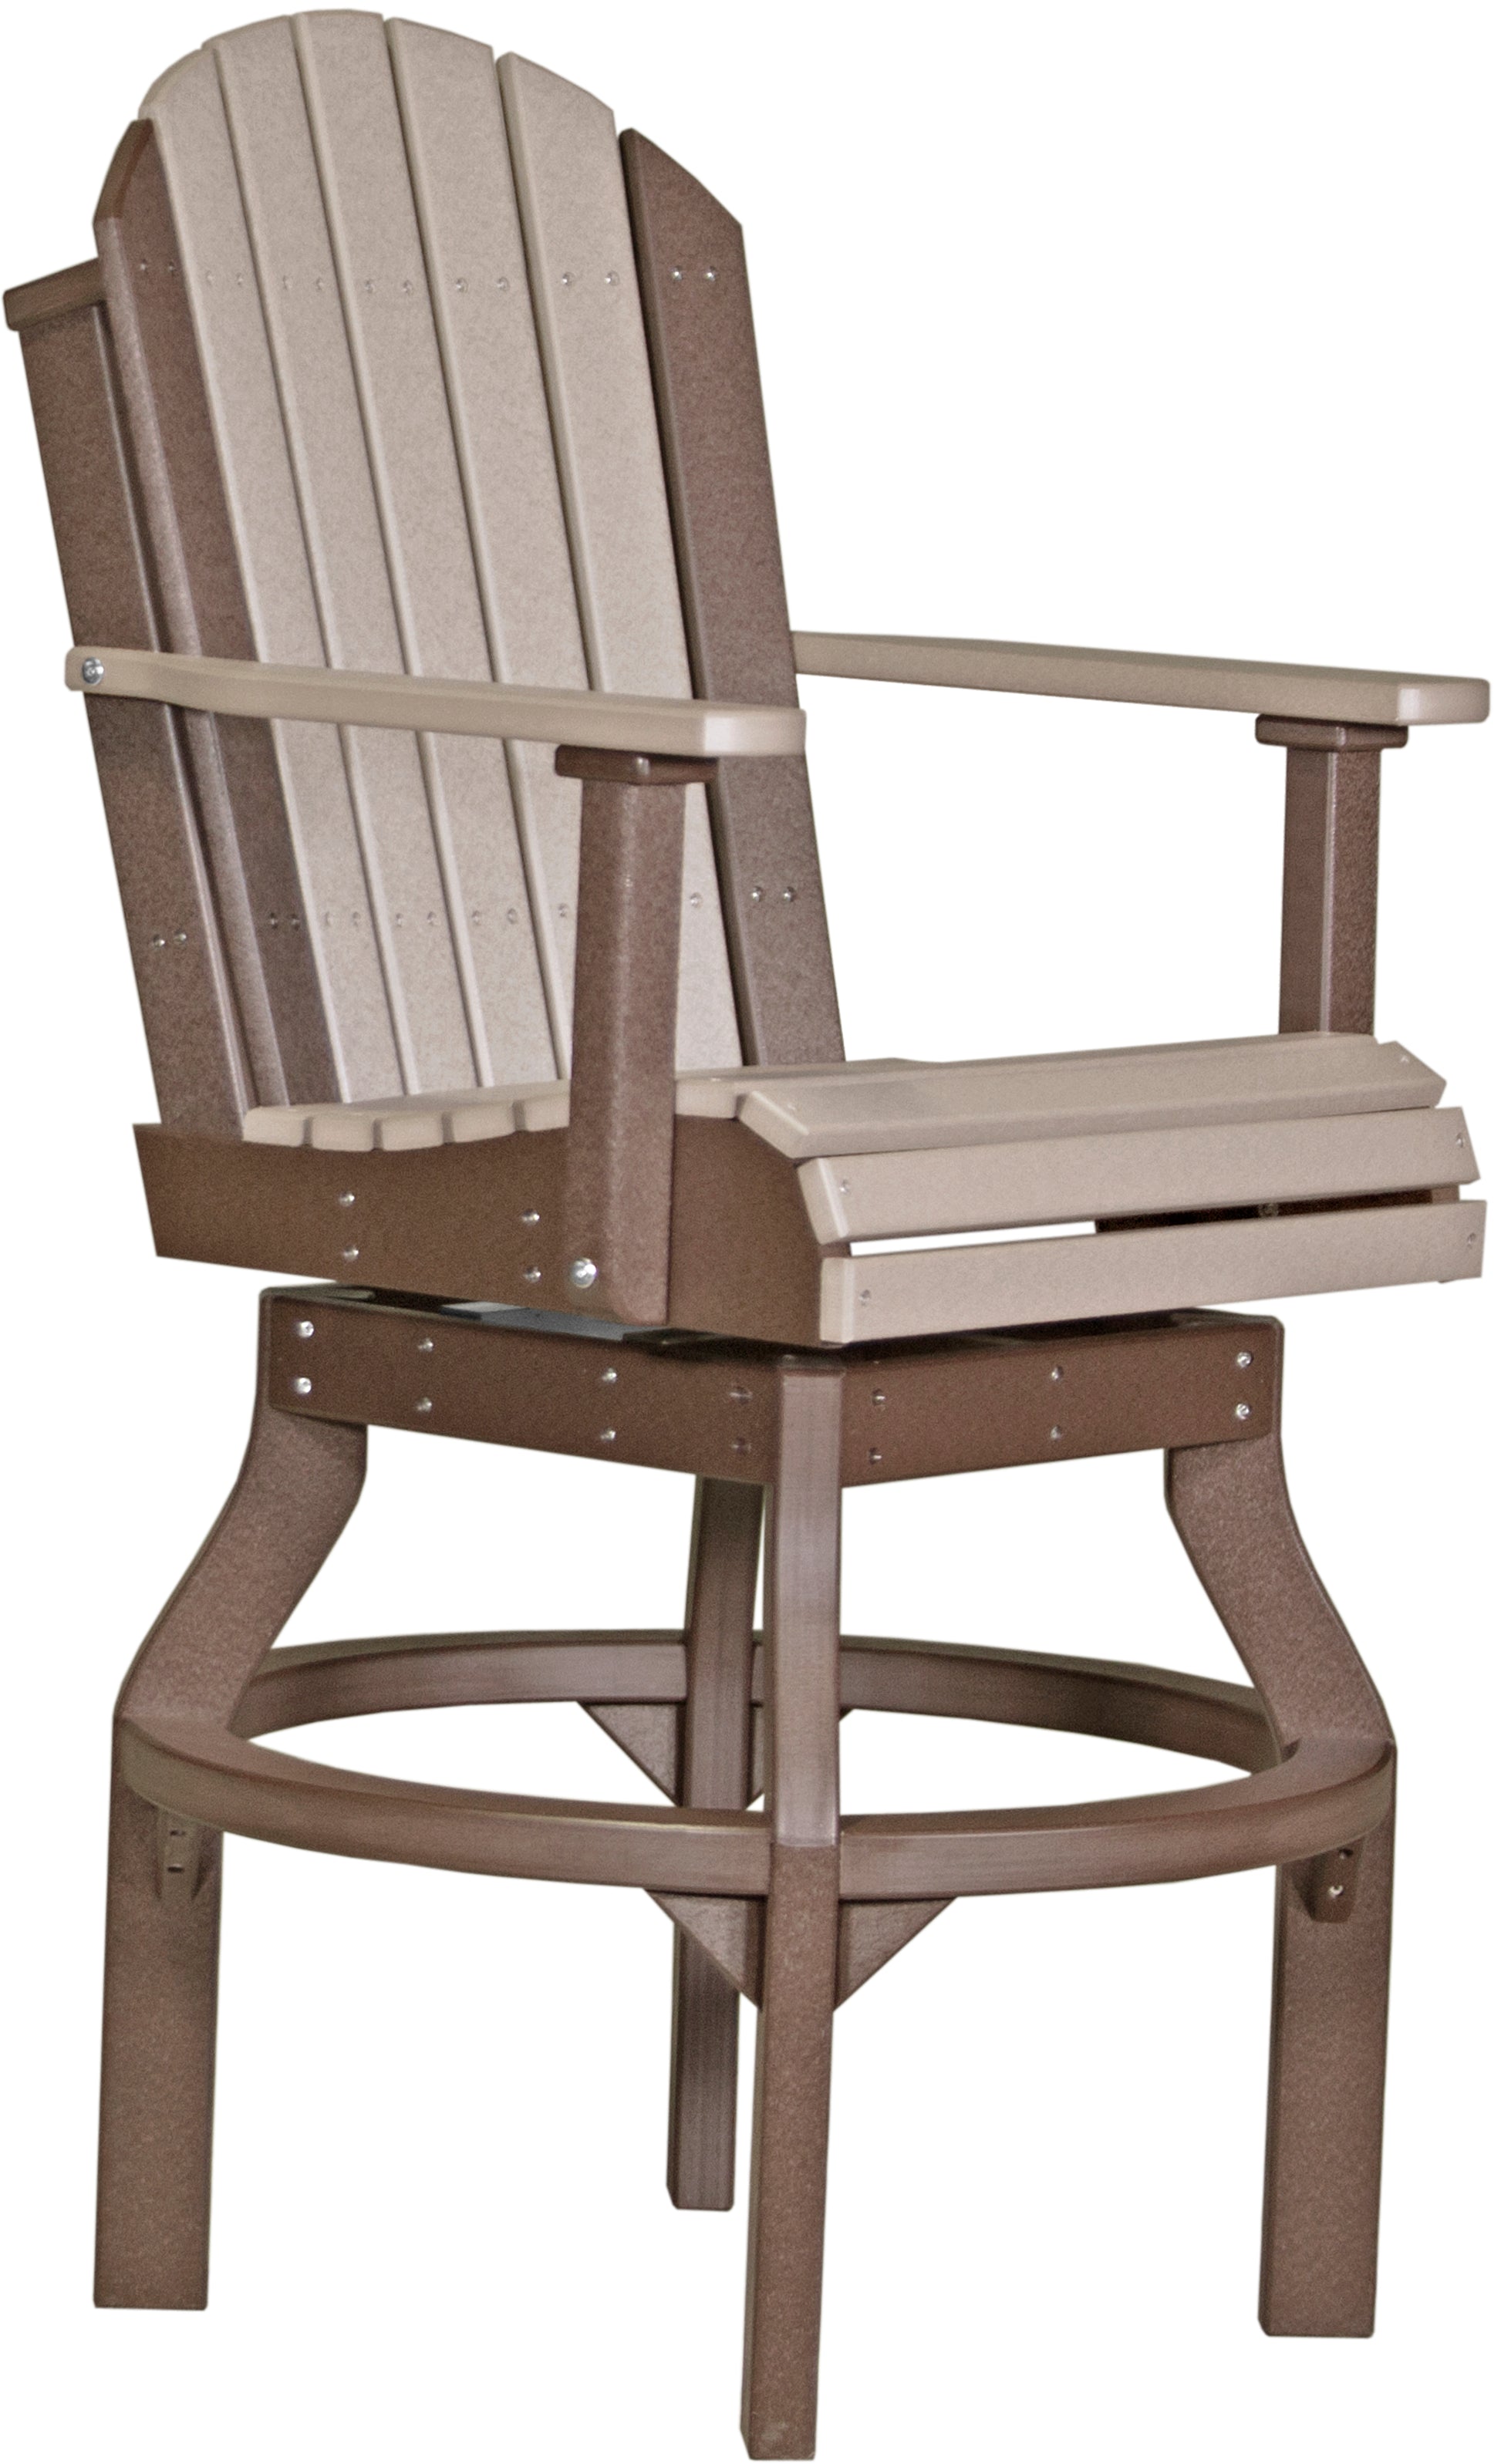 LuxCraft Adirondack Swivel Chair  Luxcraft Weatherwood / Chestnut Brown Bar 